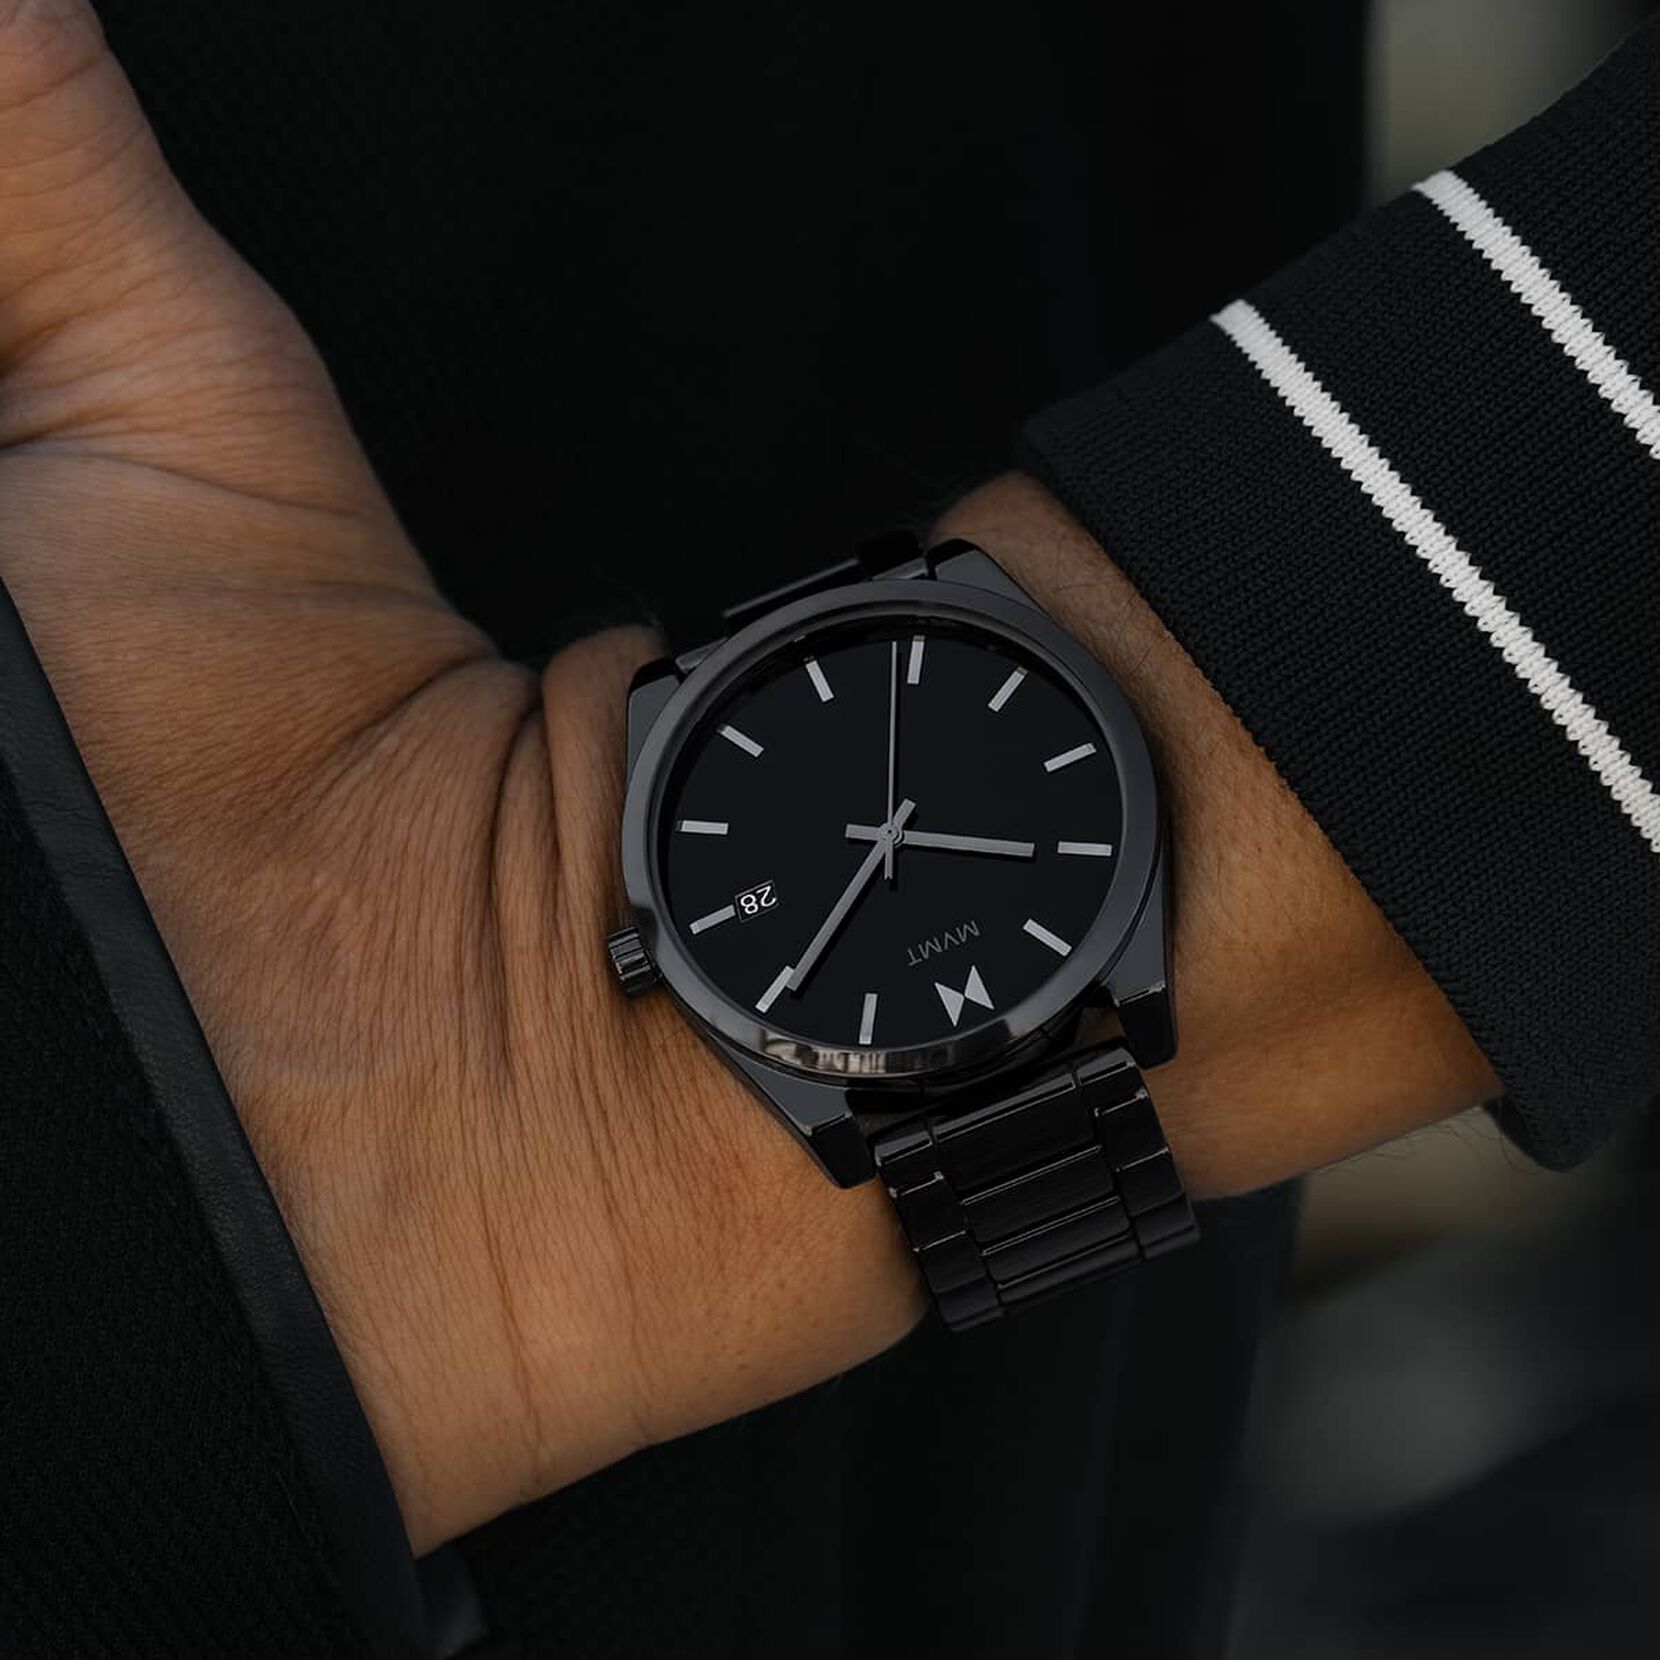 Men's Gloss Black Element Ceramic Watch 28000252-D MVMT